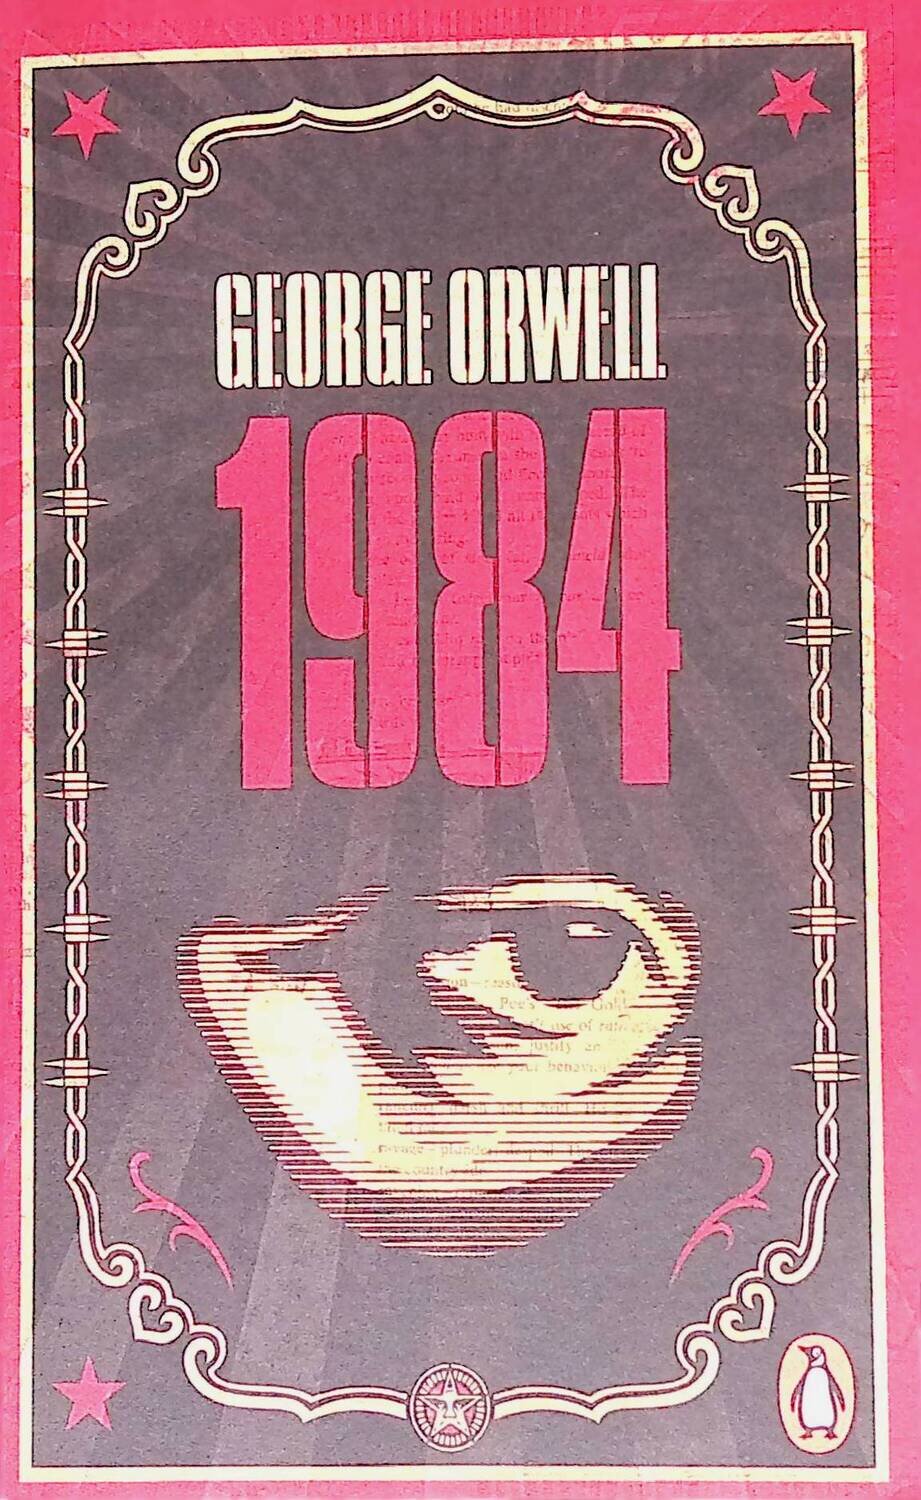 1984; Orwell George